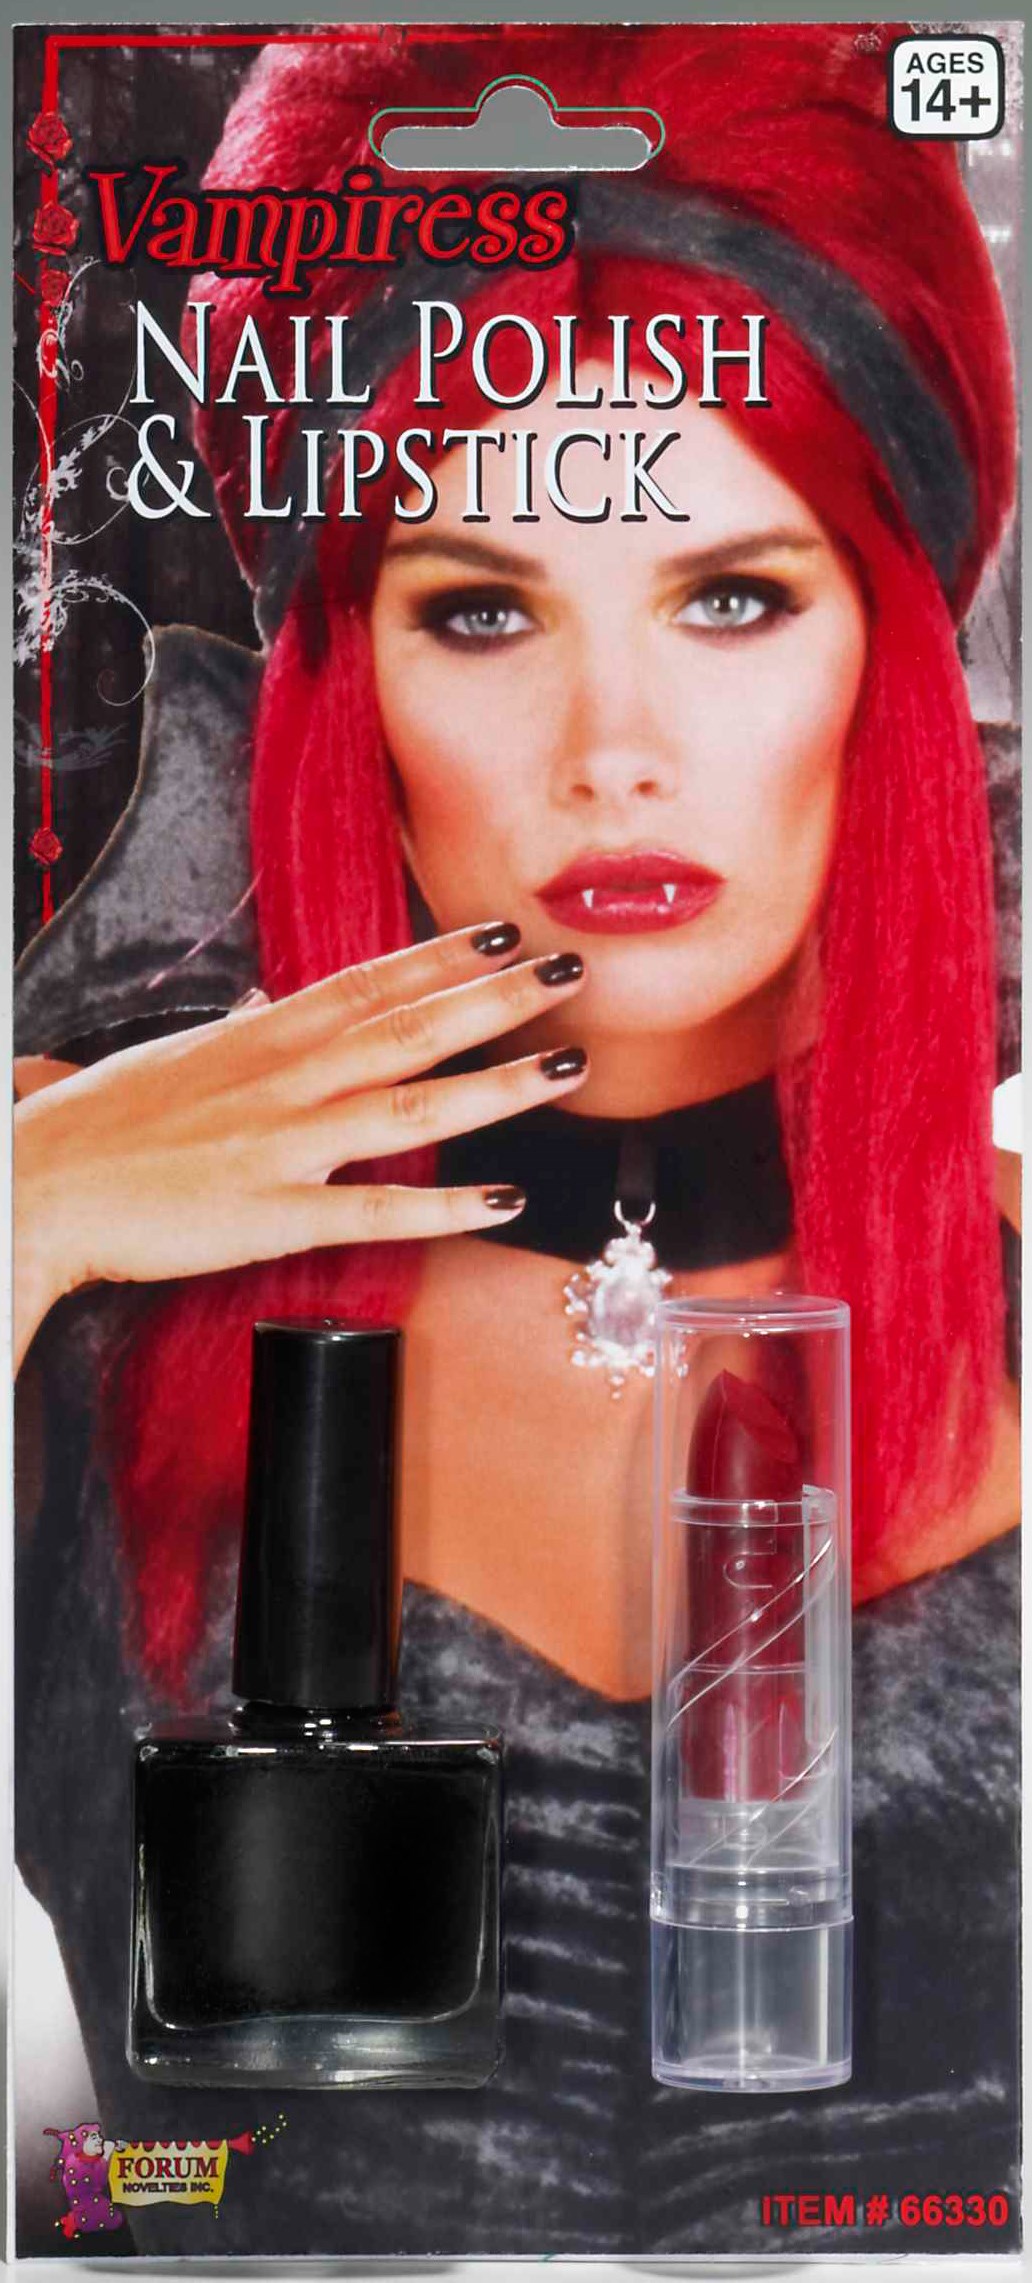 Vampiress Nail Polish & Lipstick Set